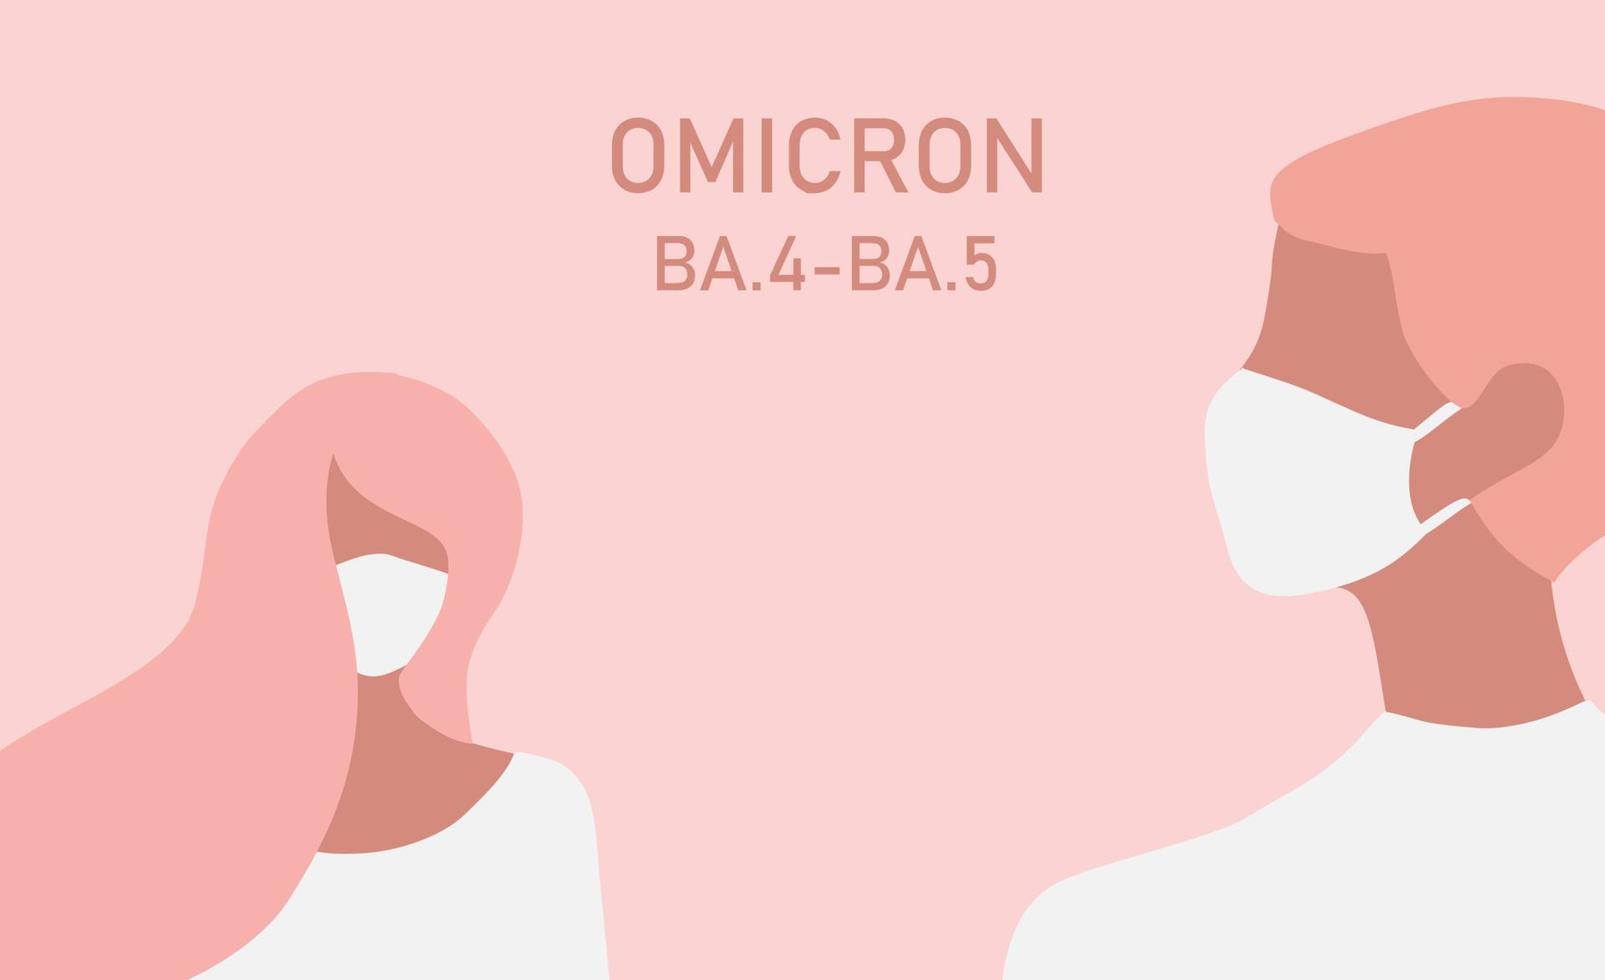 variante omicron ba.4-ba.5 covid-19. nova cepa de coronavírus. casal com máscara facial tossindo ilustração vetorial vetor